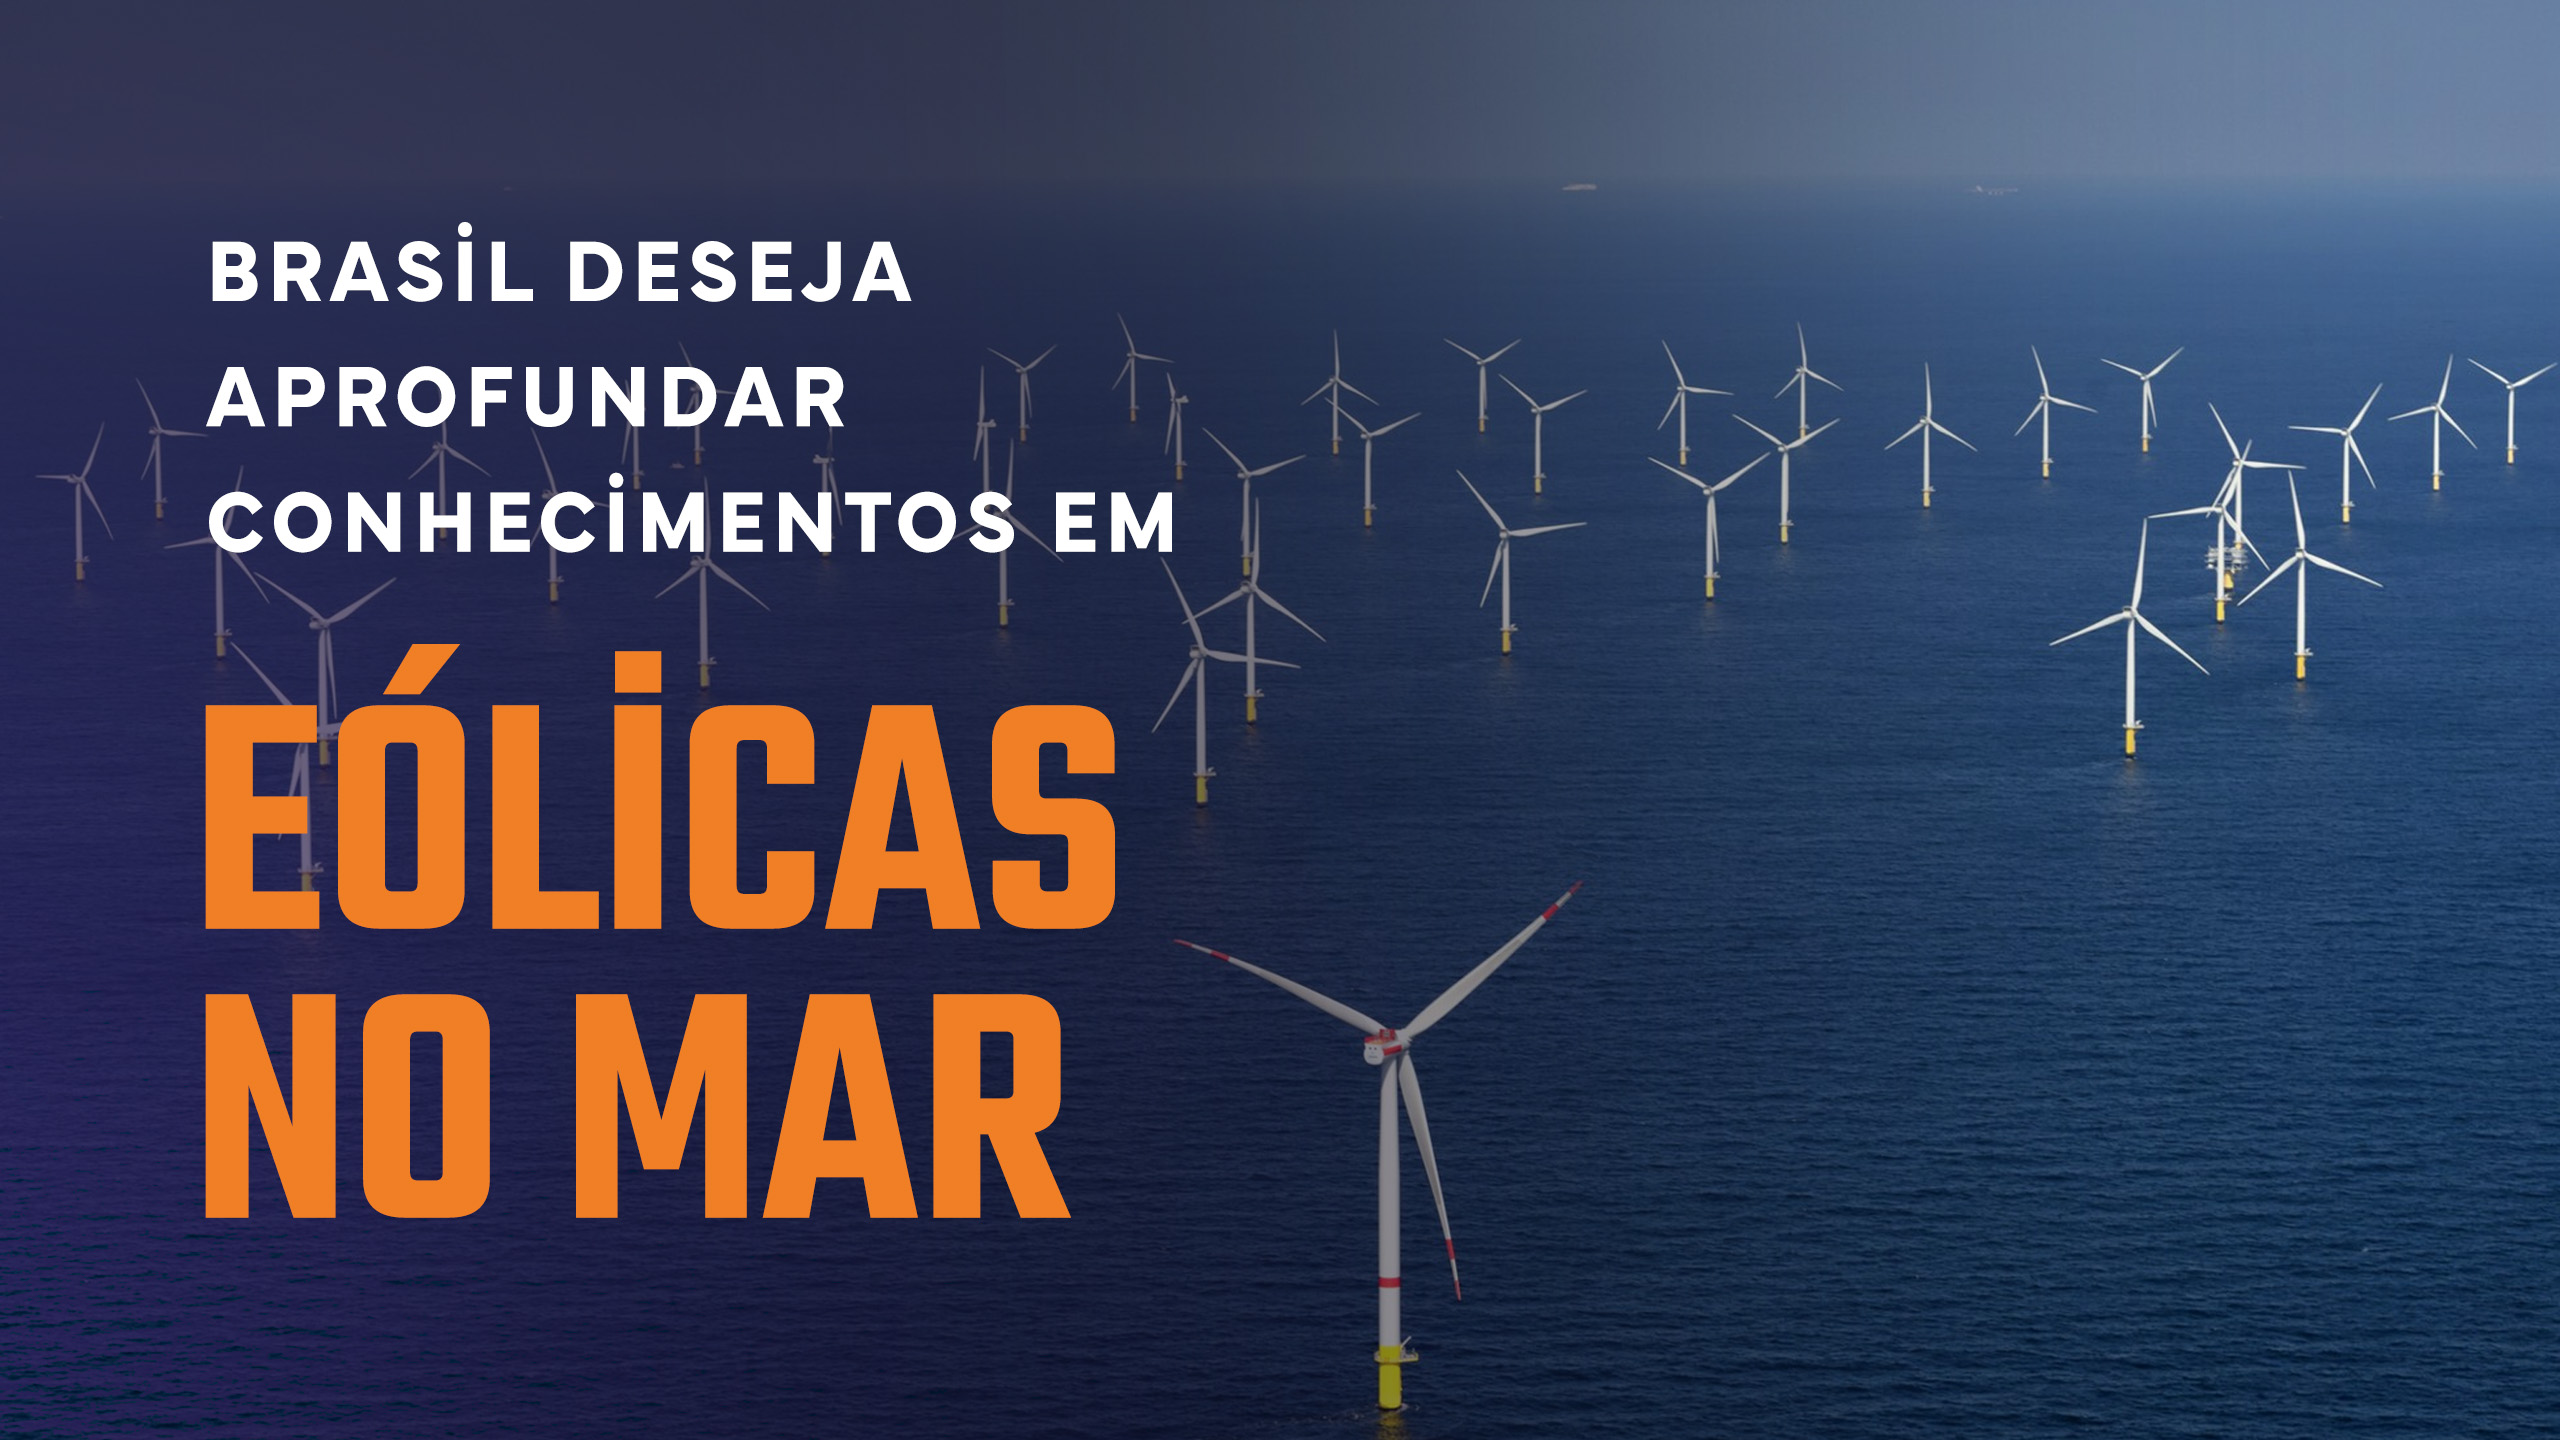 Brasil deseja aprofundar conhecimentos em eólicas no mar